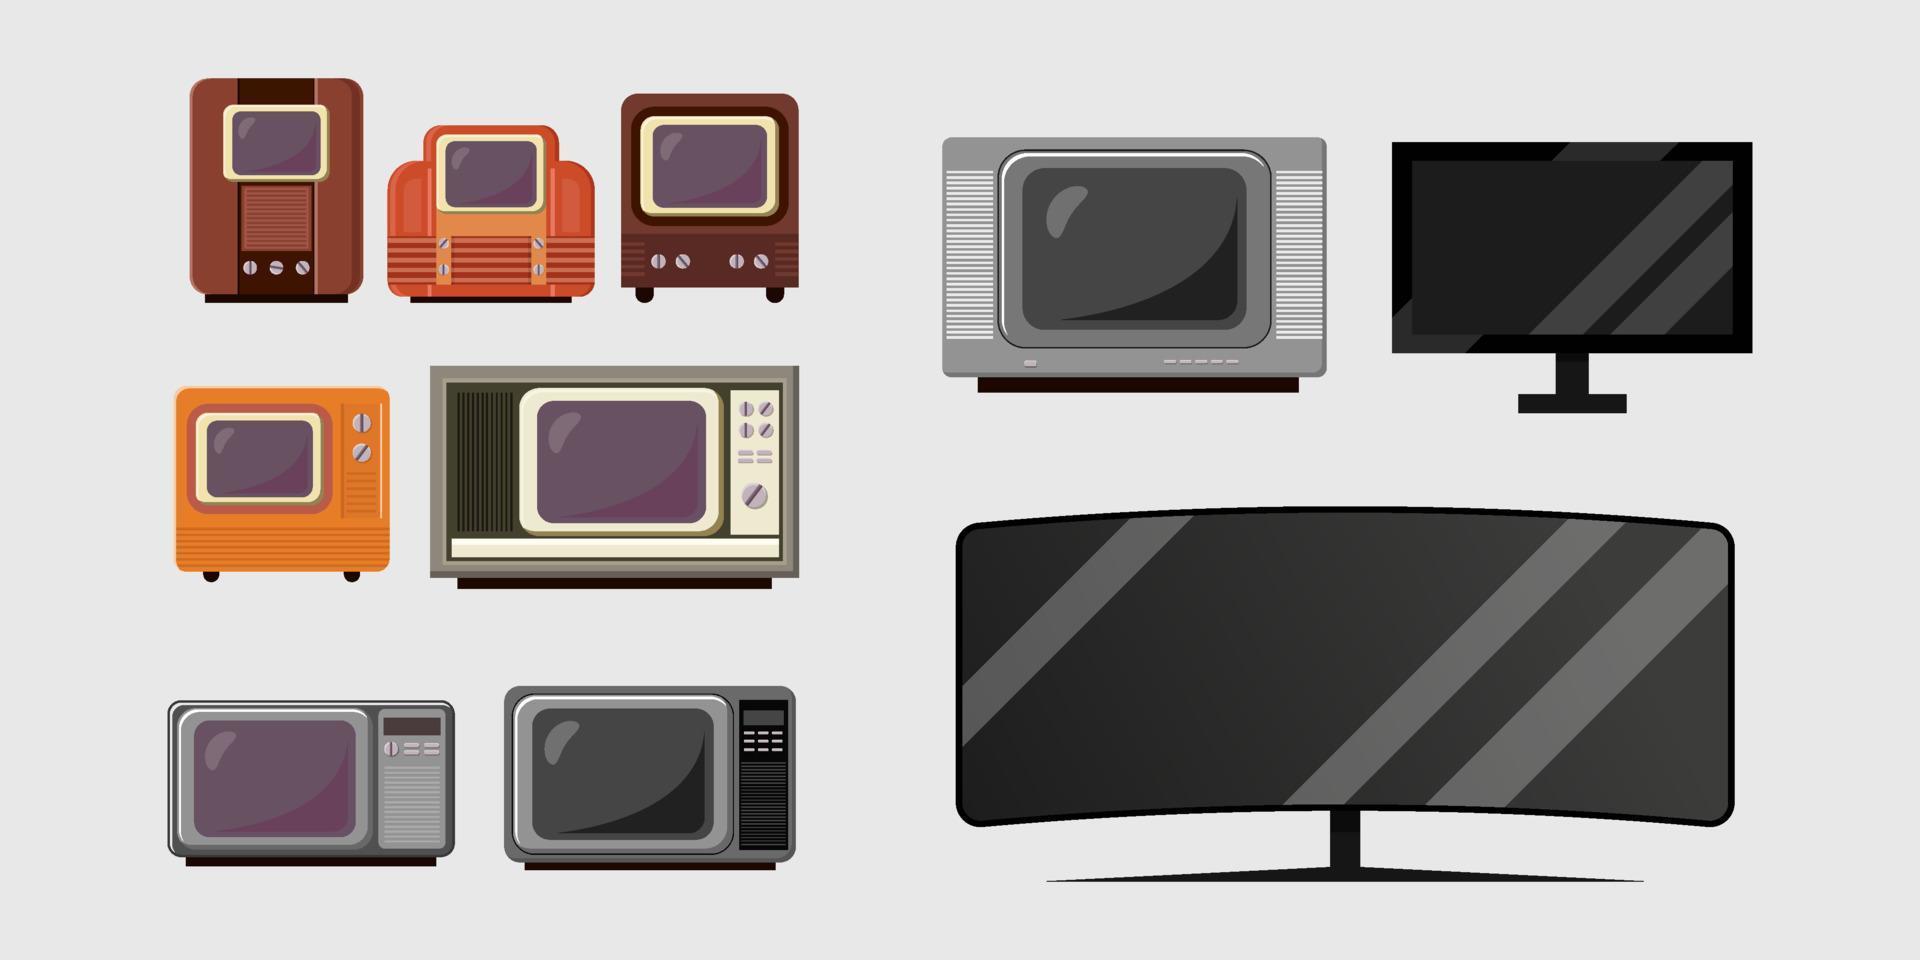 definir ilustração da evolução da televisão de anos para anos vetor